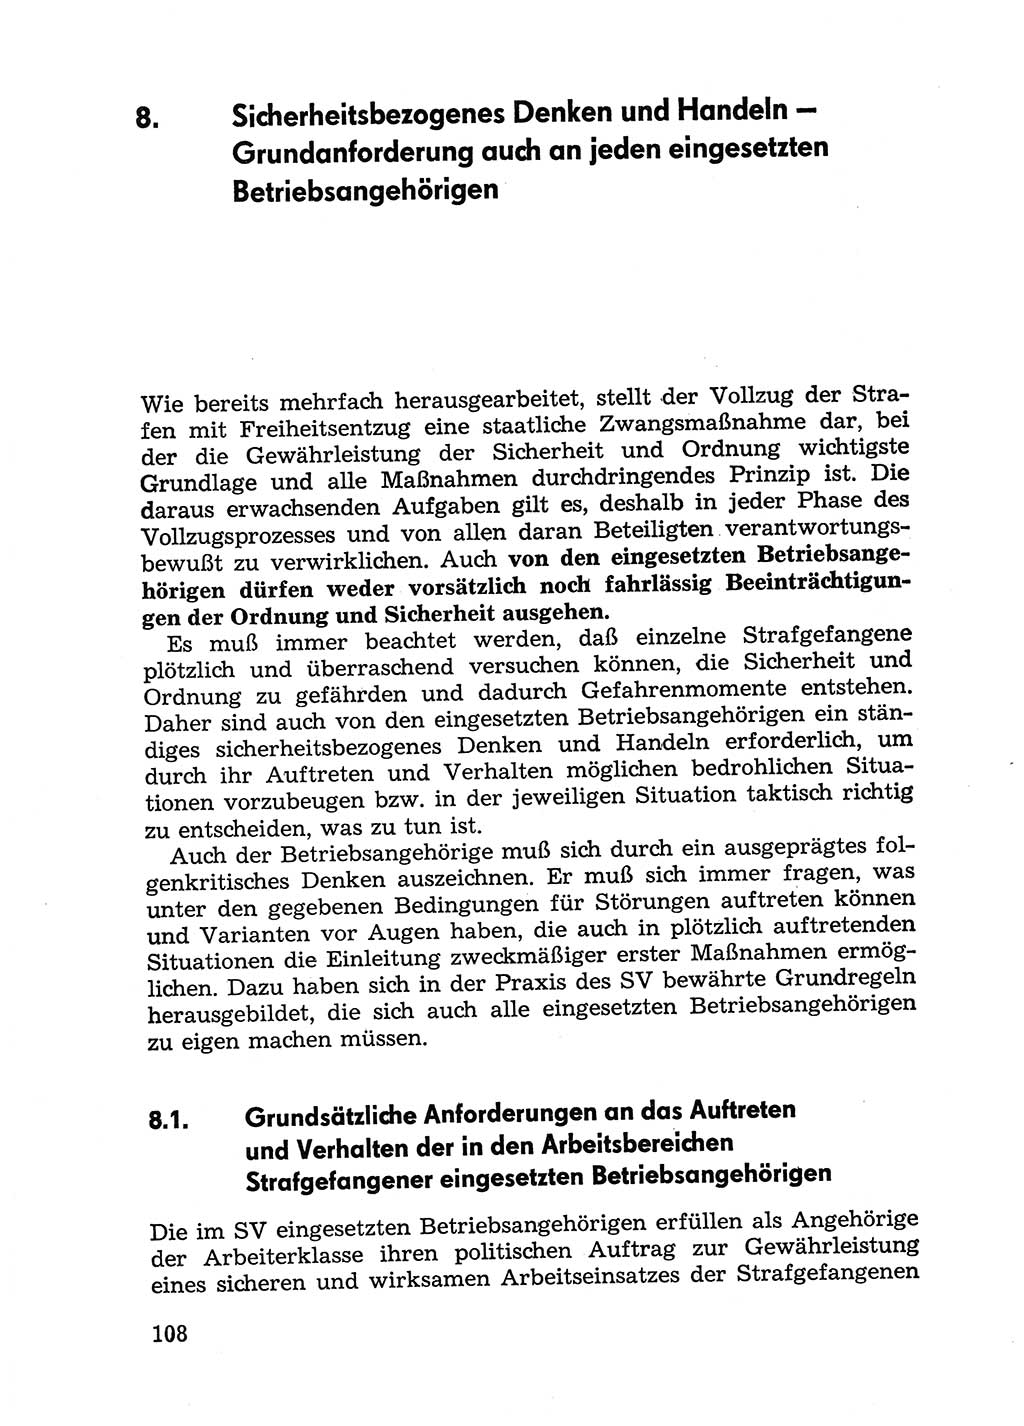 Handbuch für Betriebsangehörige, Abteilung Strafvollzug (SV) [Ministerium des Innern (MdI) Deutsche Demokratische Republik (DDR)] 1981, Seite 108 (Hb. BA Abt. SV MdI DDR 1981, S. 108)